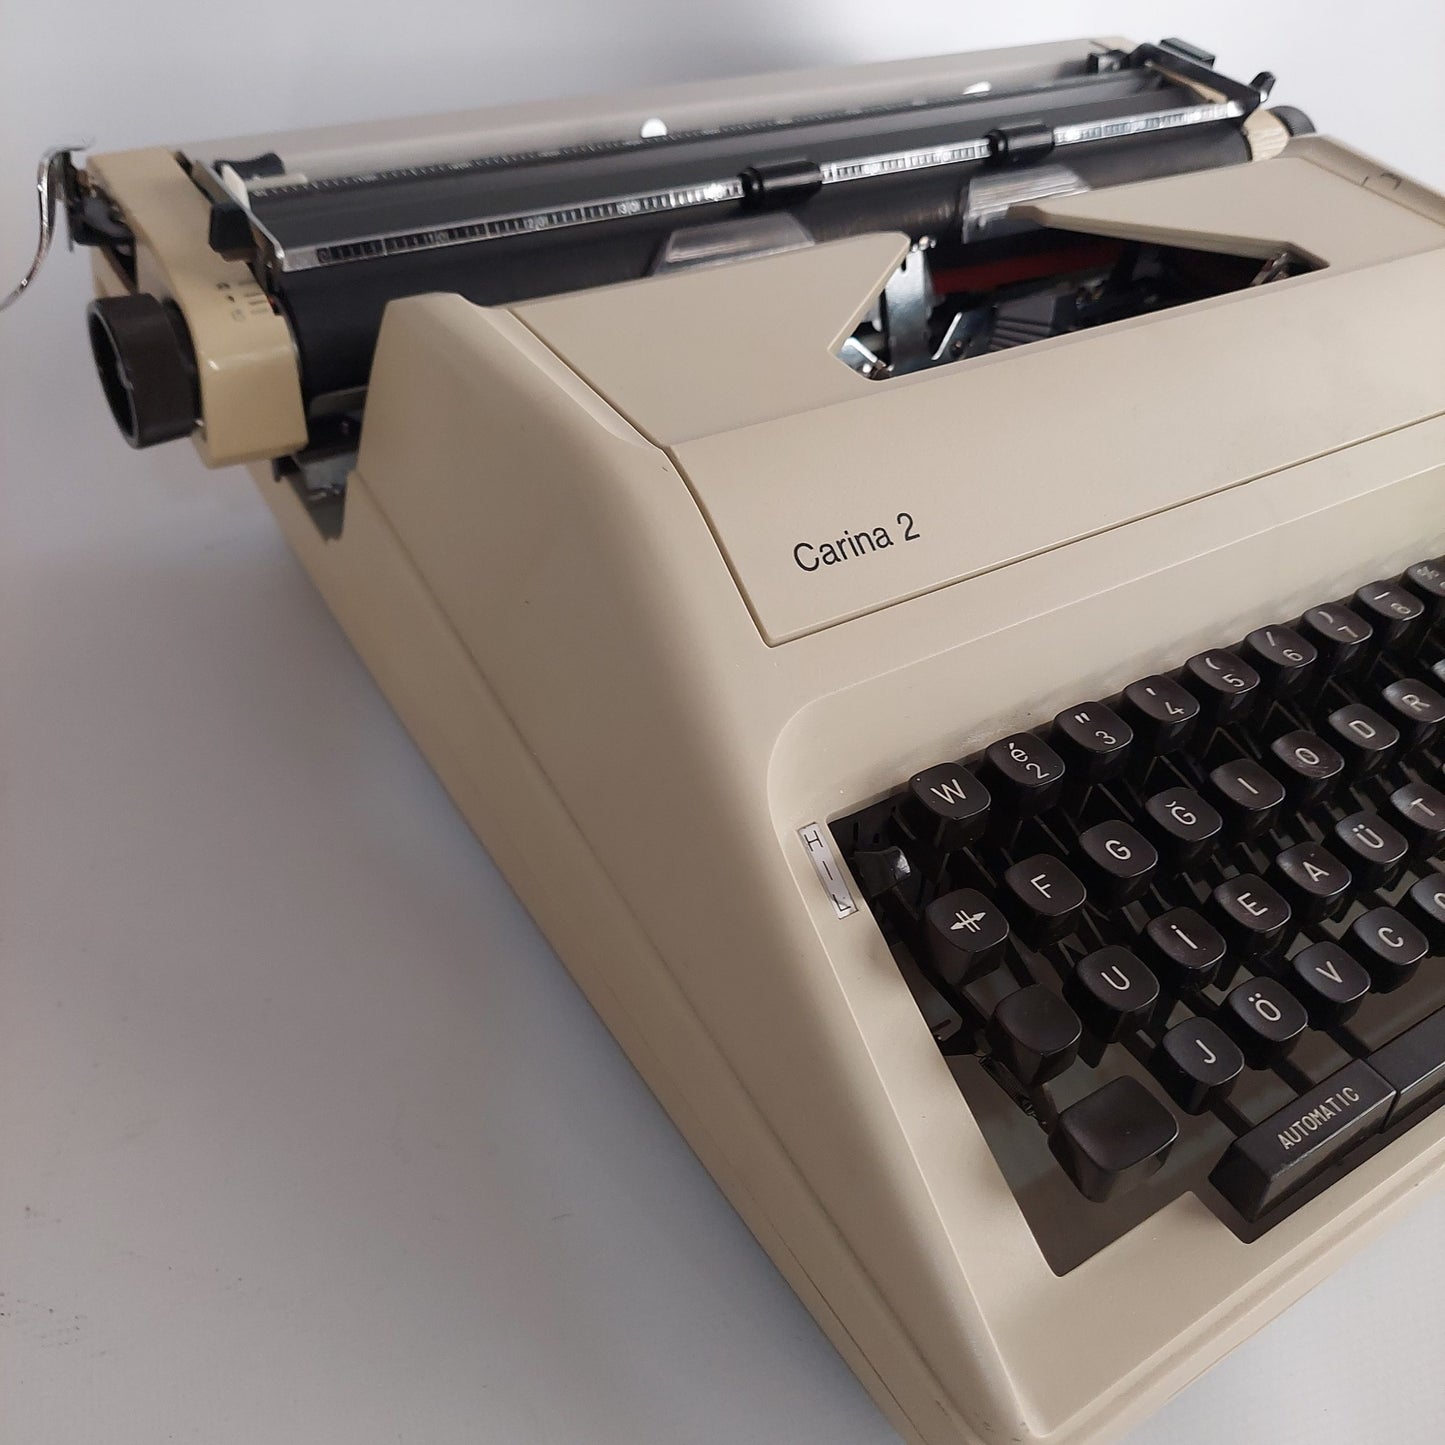 Olimpia Carina-2 Typewriter